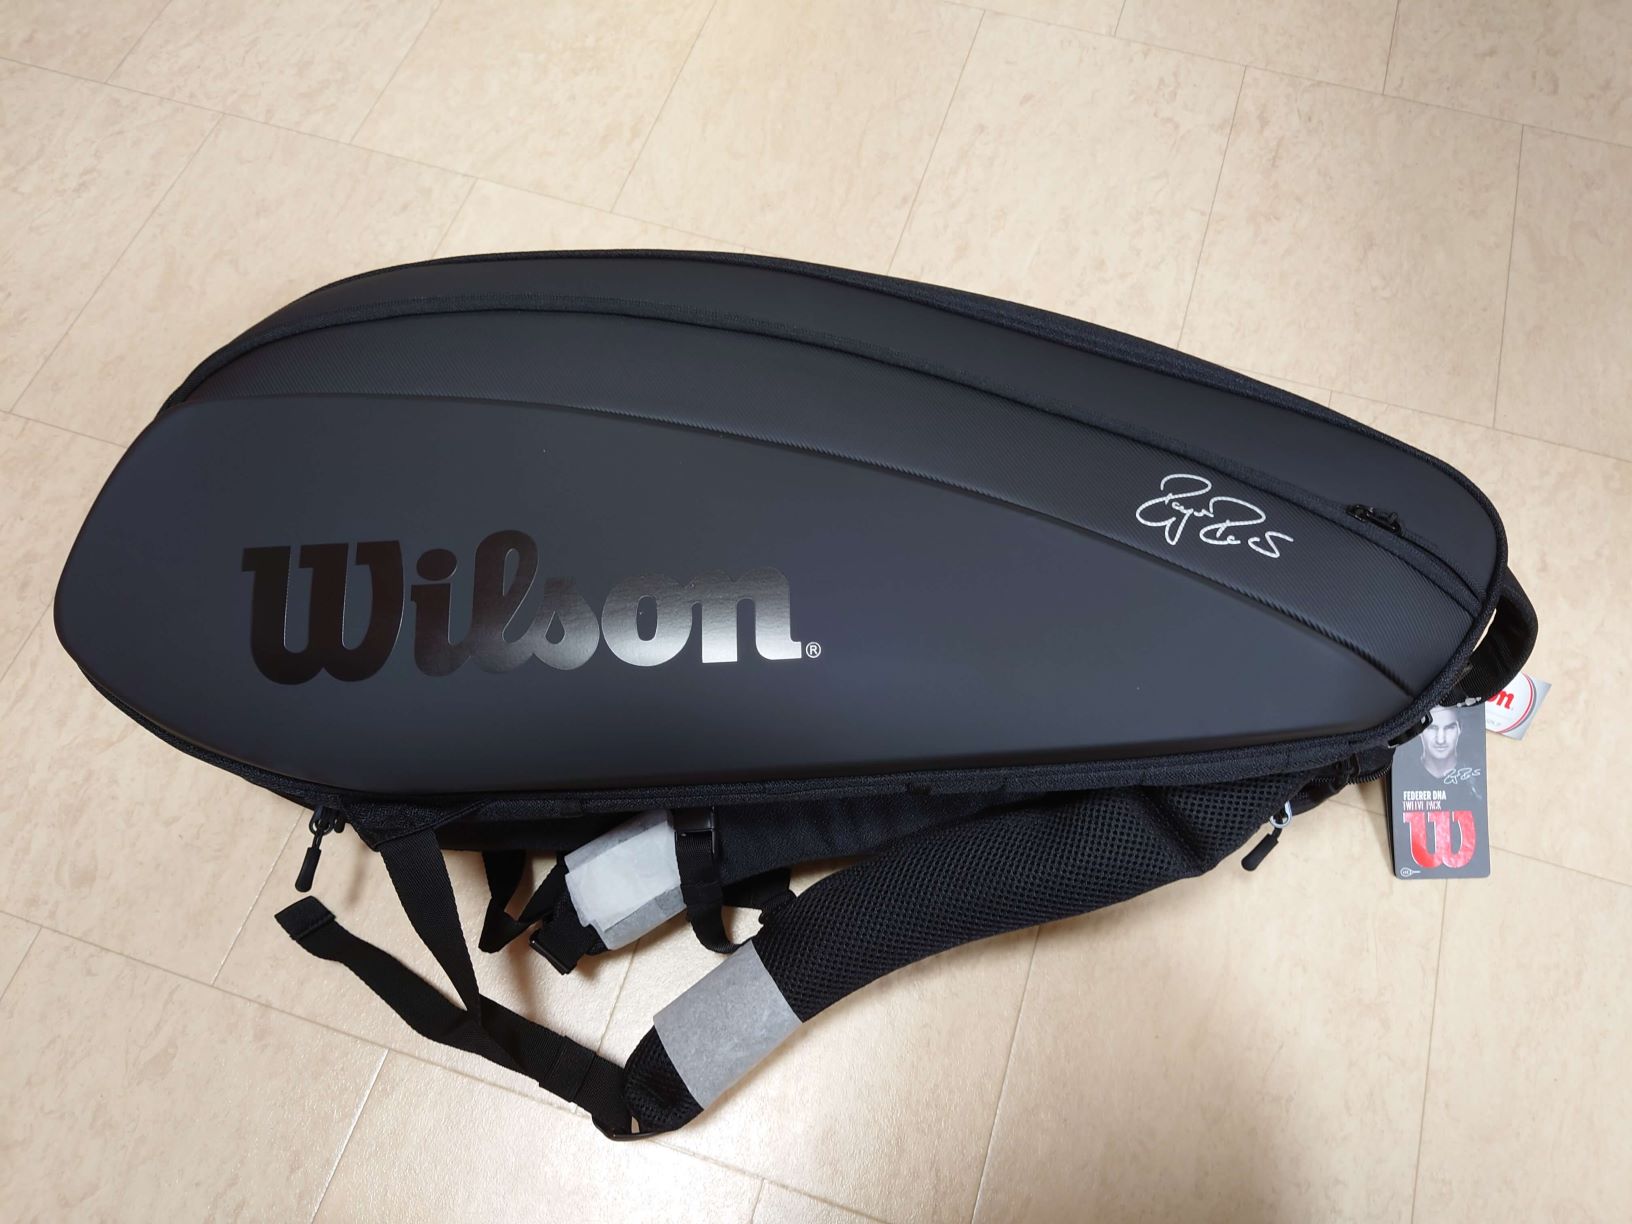 Wilson(ウイルソン) テニス ラケットバッグ